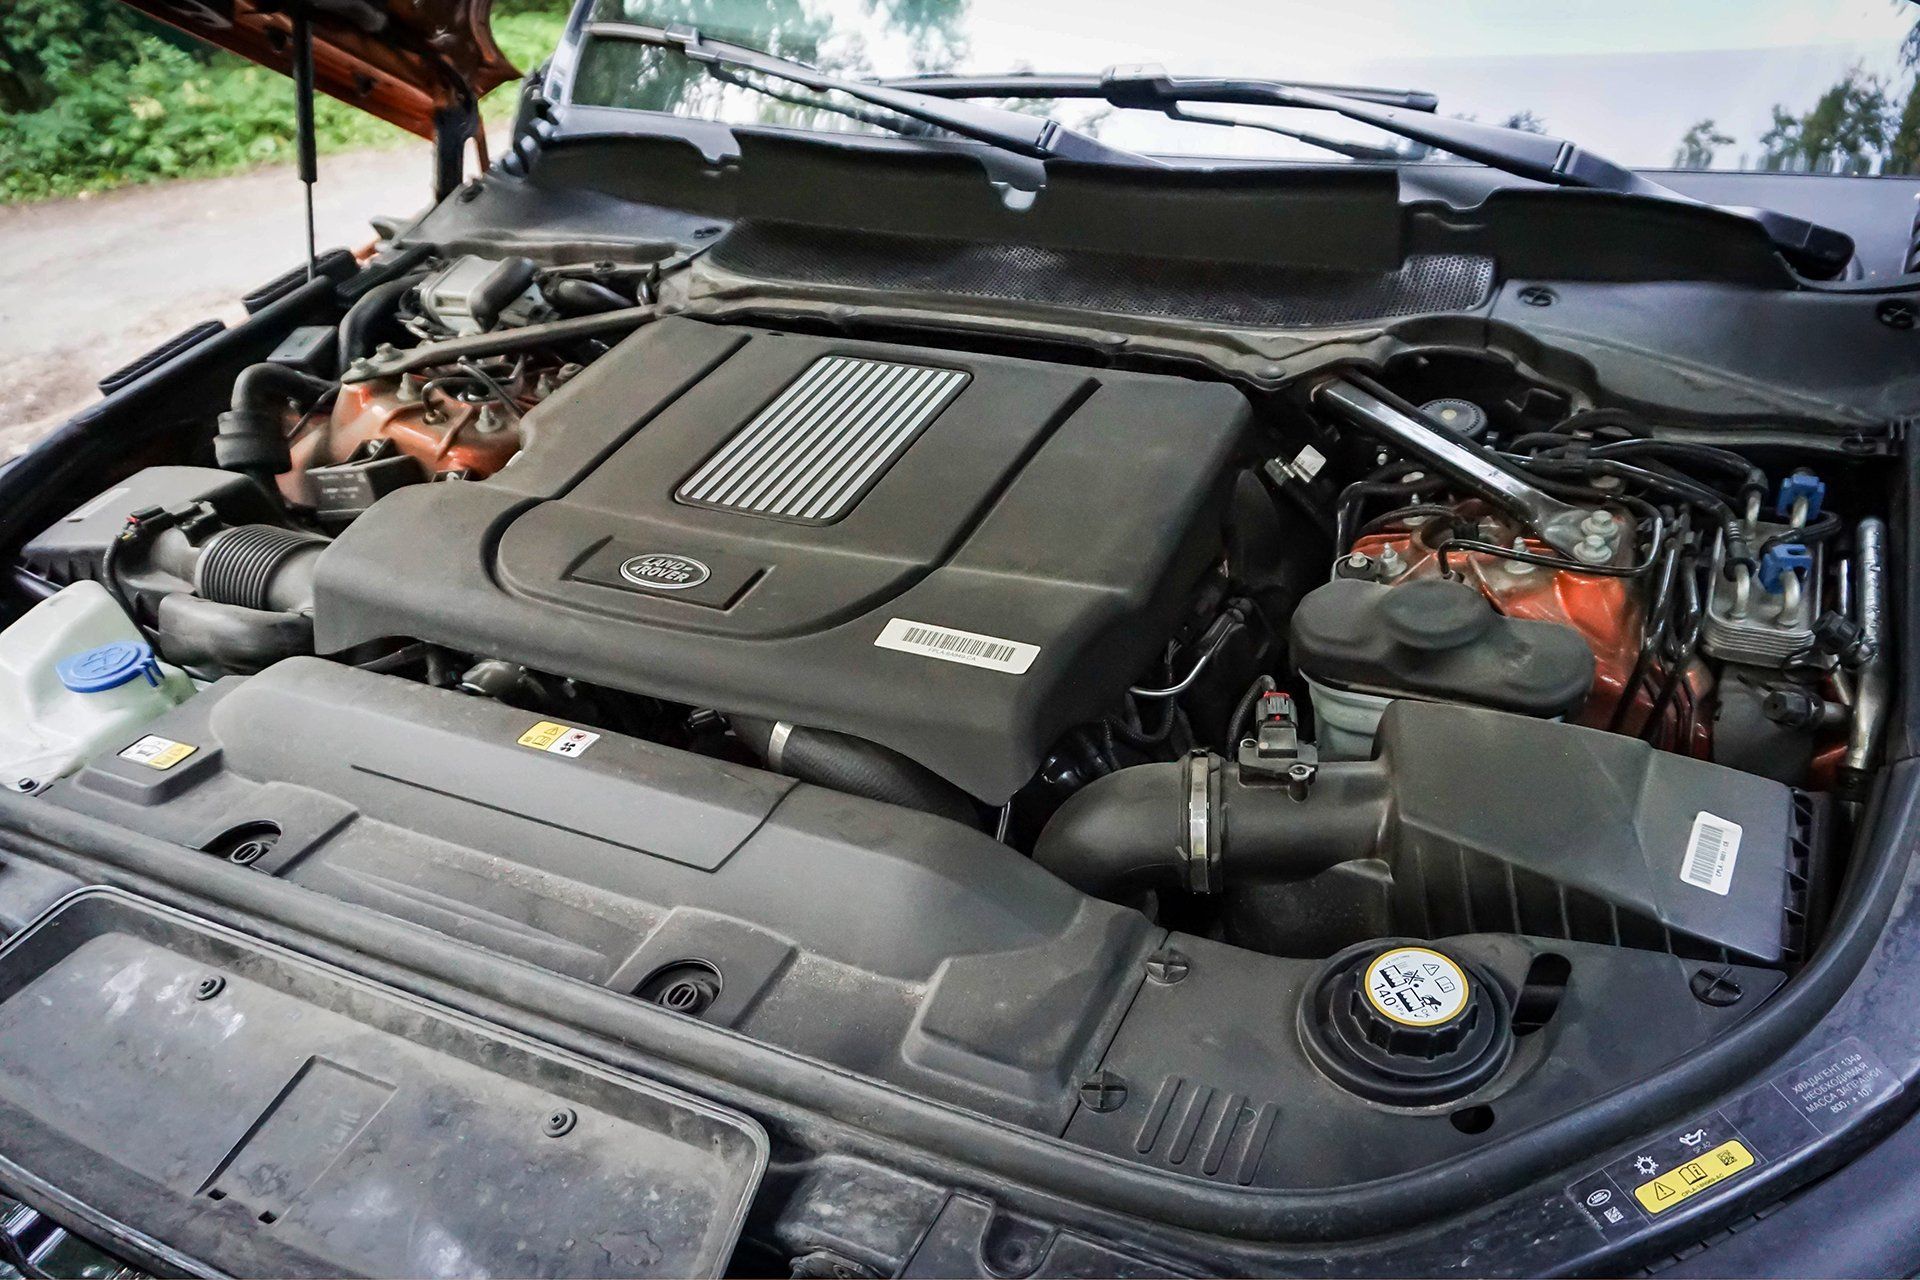 Range Rover Sport SDV8: тест-драйв от CarsWeek.ru